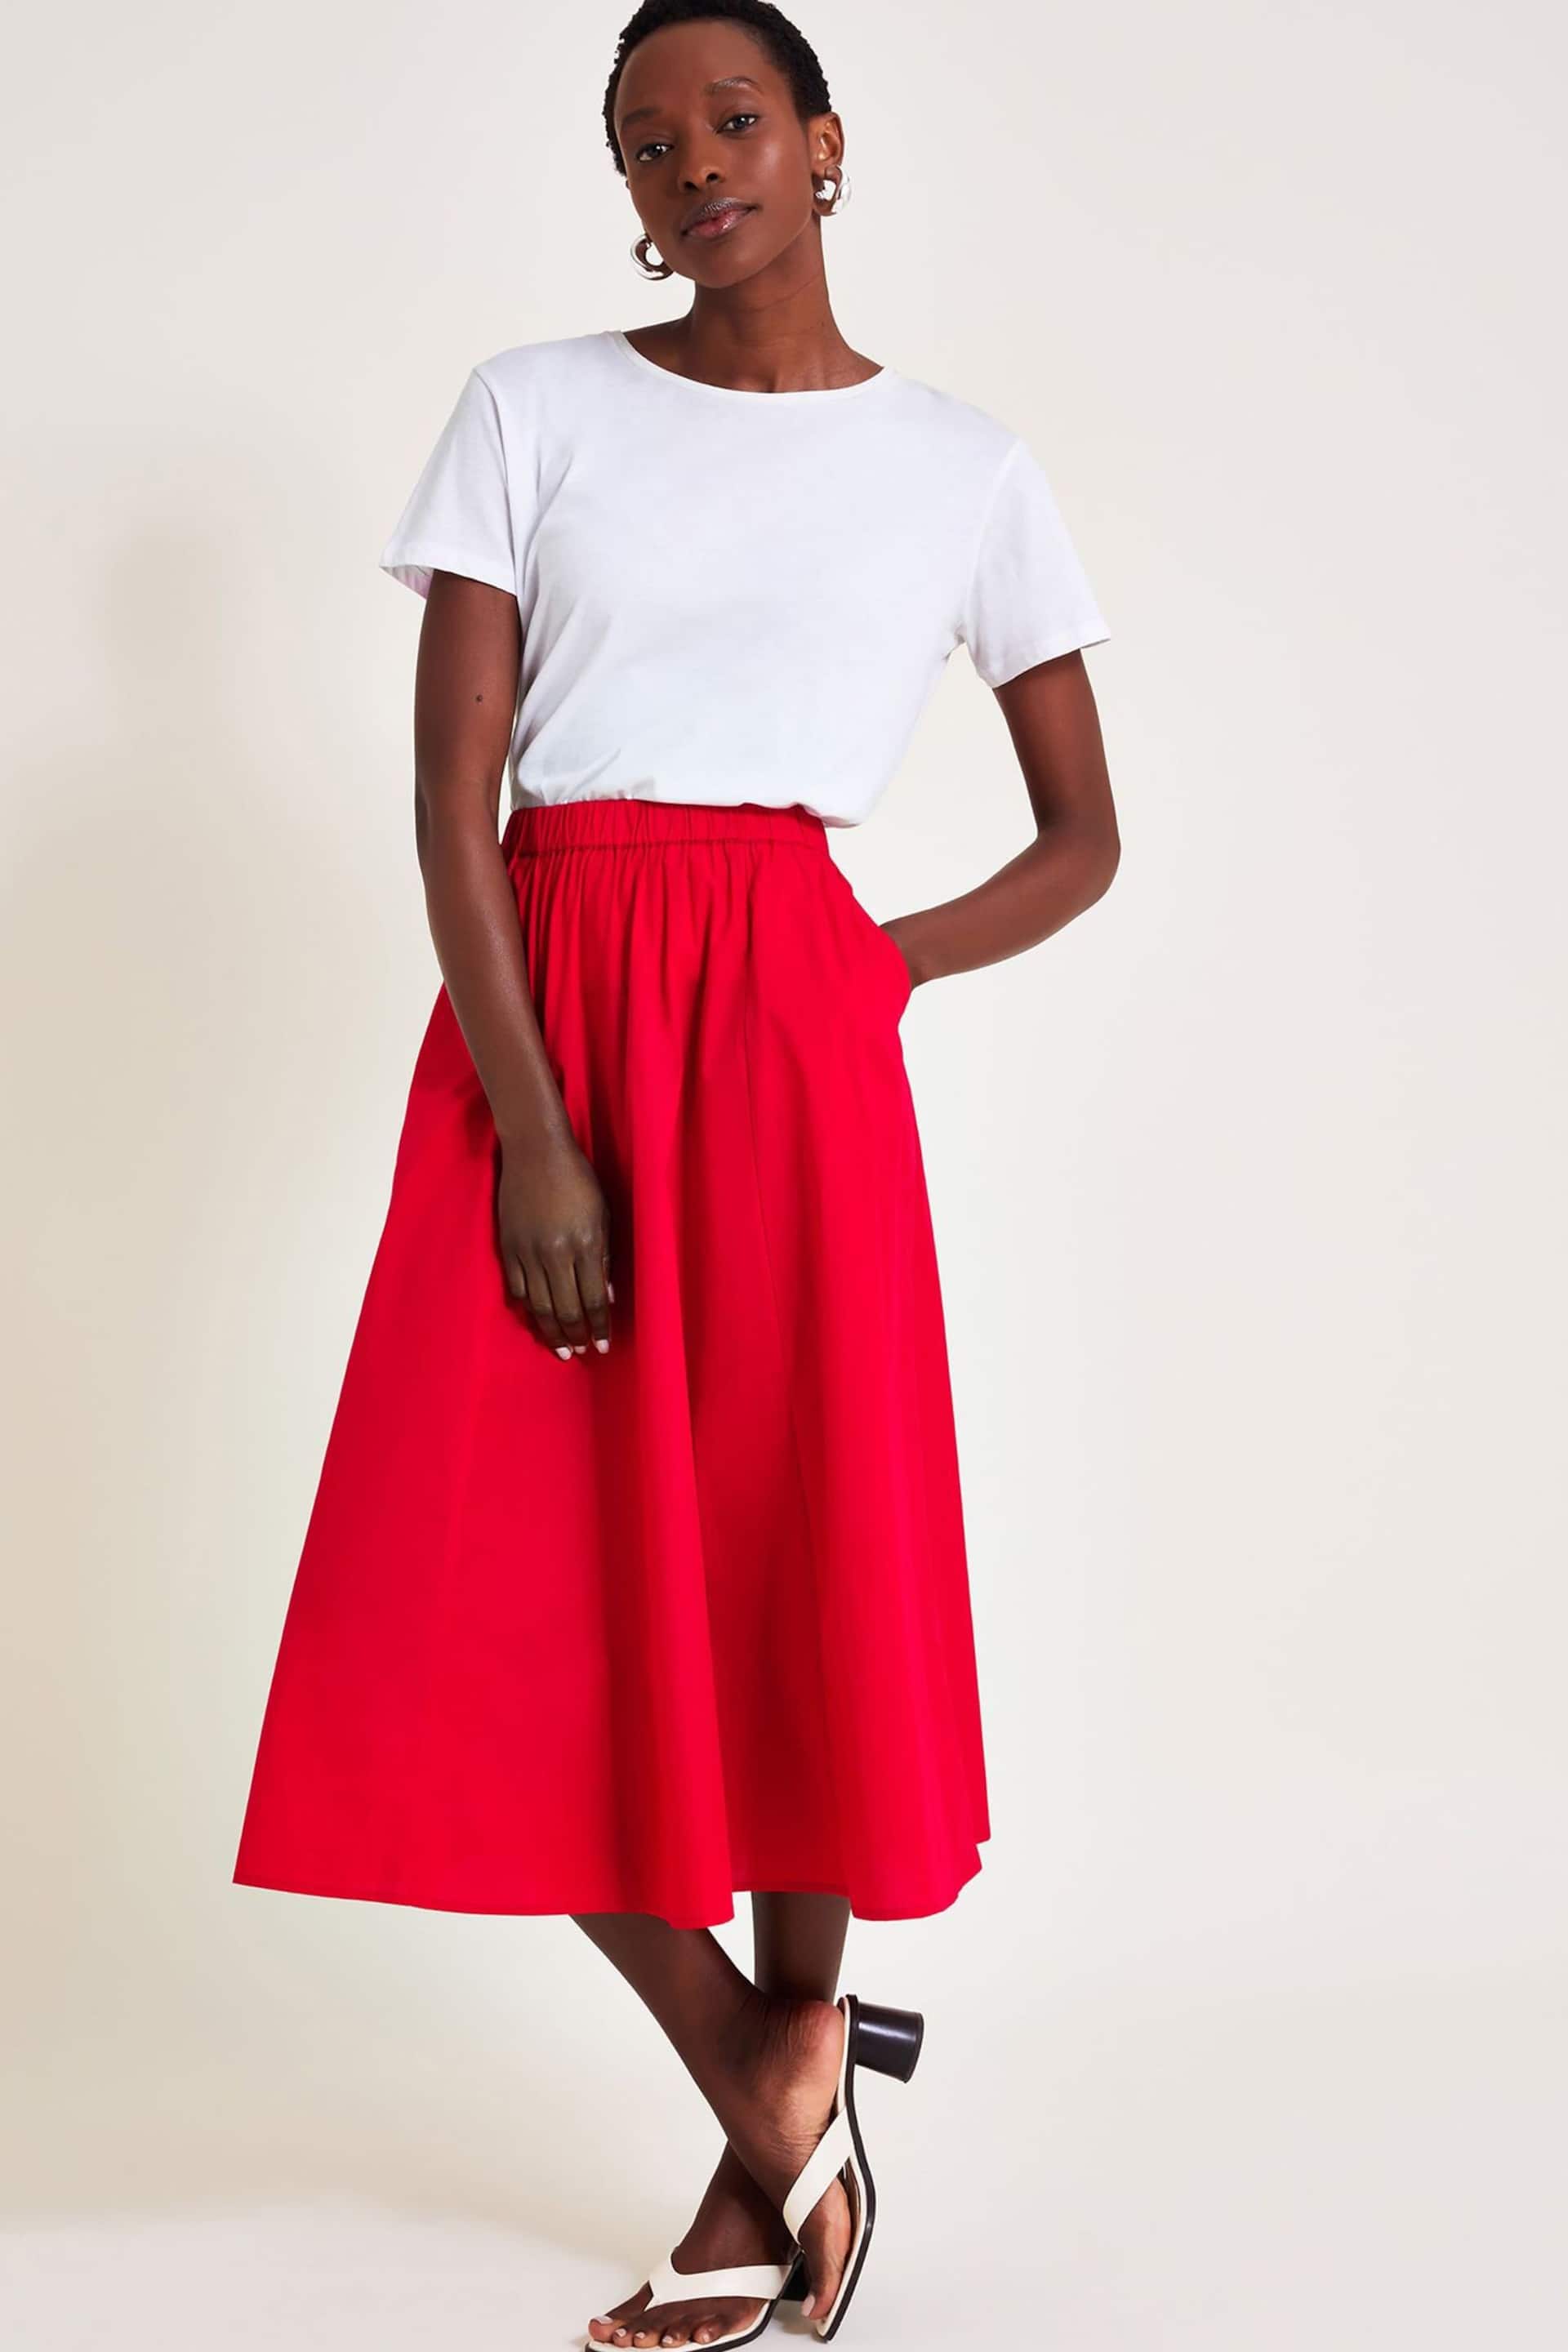 Monsoon Red Rachel Poplin Skirt - Image 5 of 6